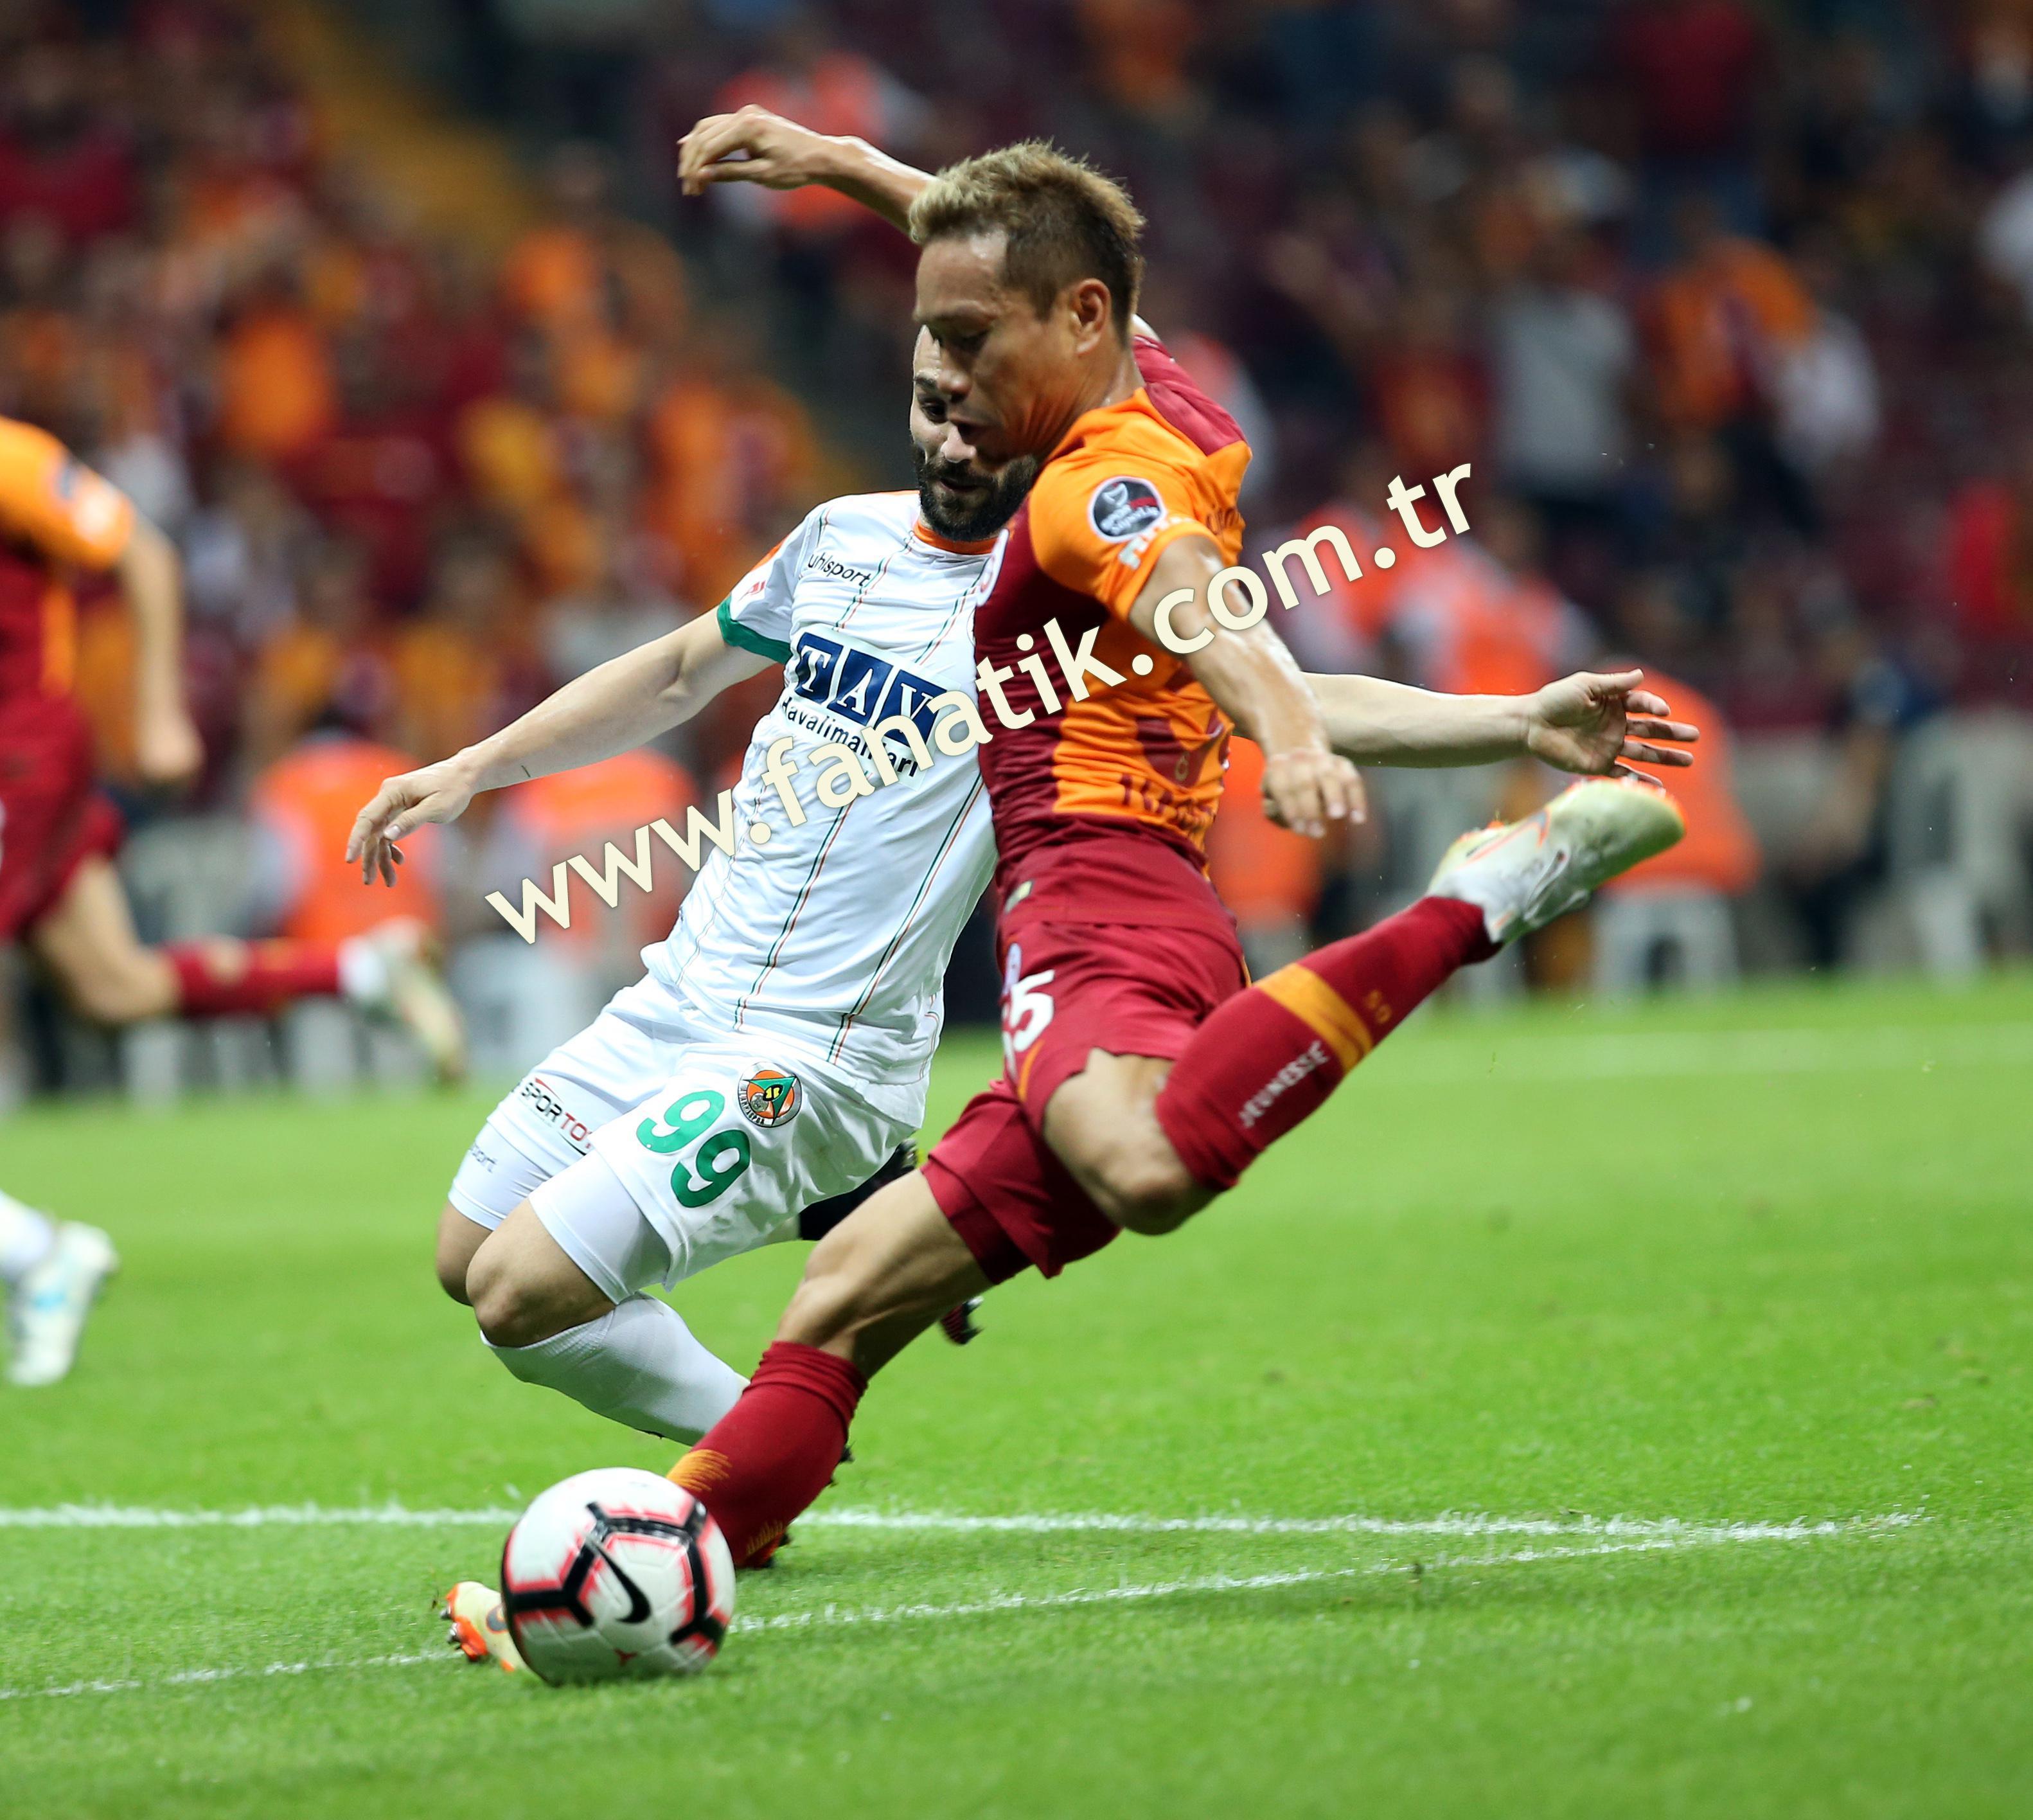 (ÖZET) Galatasaray-Alanyaspor maç sonucu: 6-0